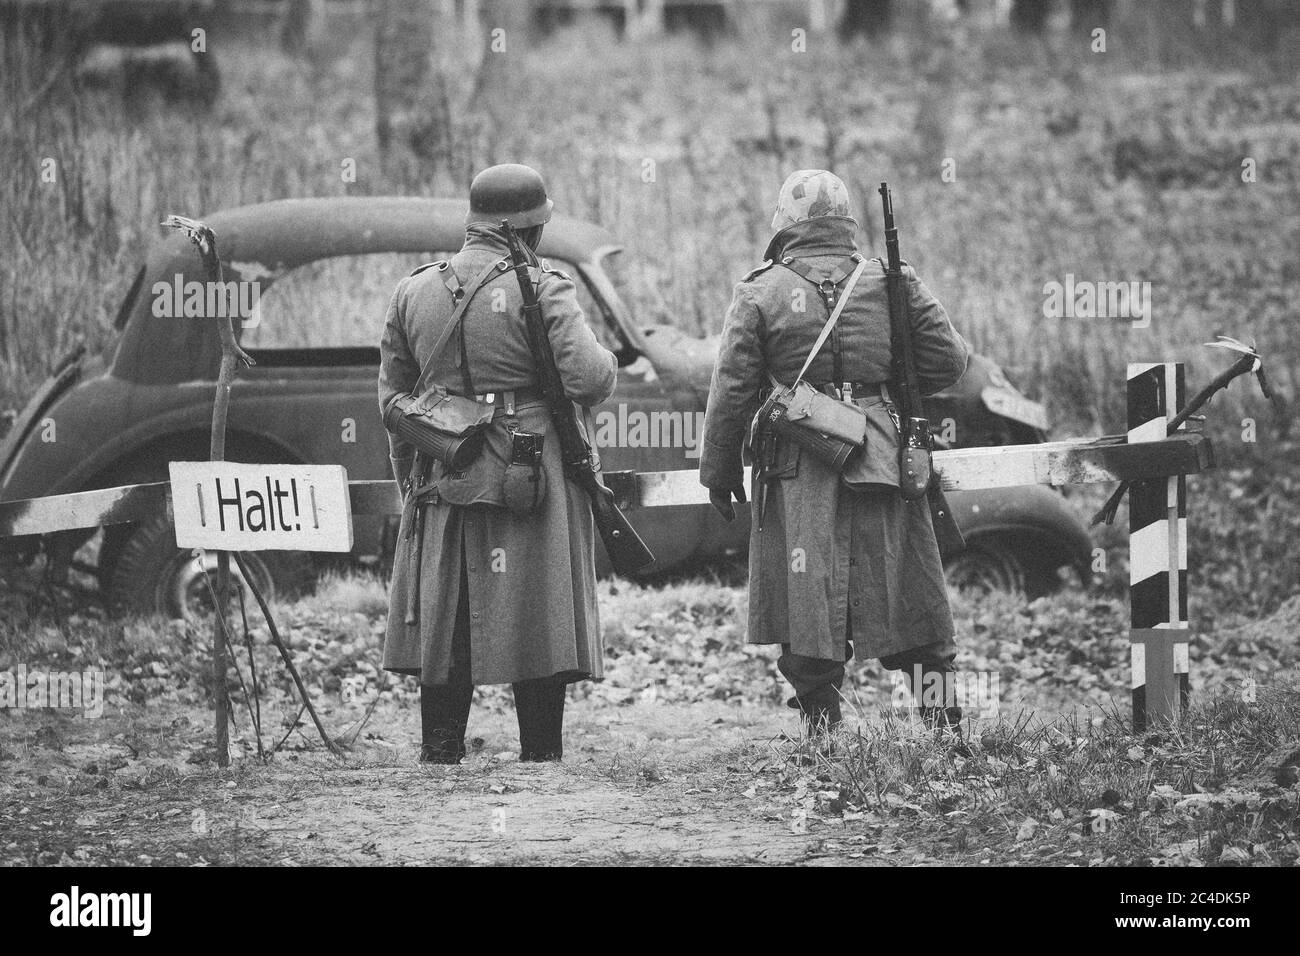 Nicht identifizierte Re-enactors als deutsche Infanterie Wehrmacht Soldat im Zweiten Weltkrieg gekleidet sind auf Patrouille im Herbst Feld. Stockfoto